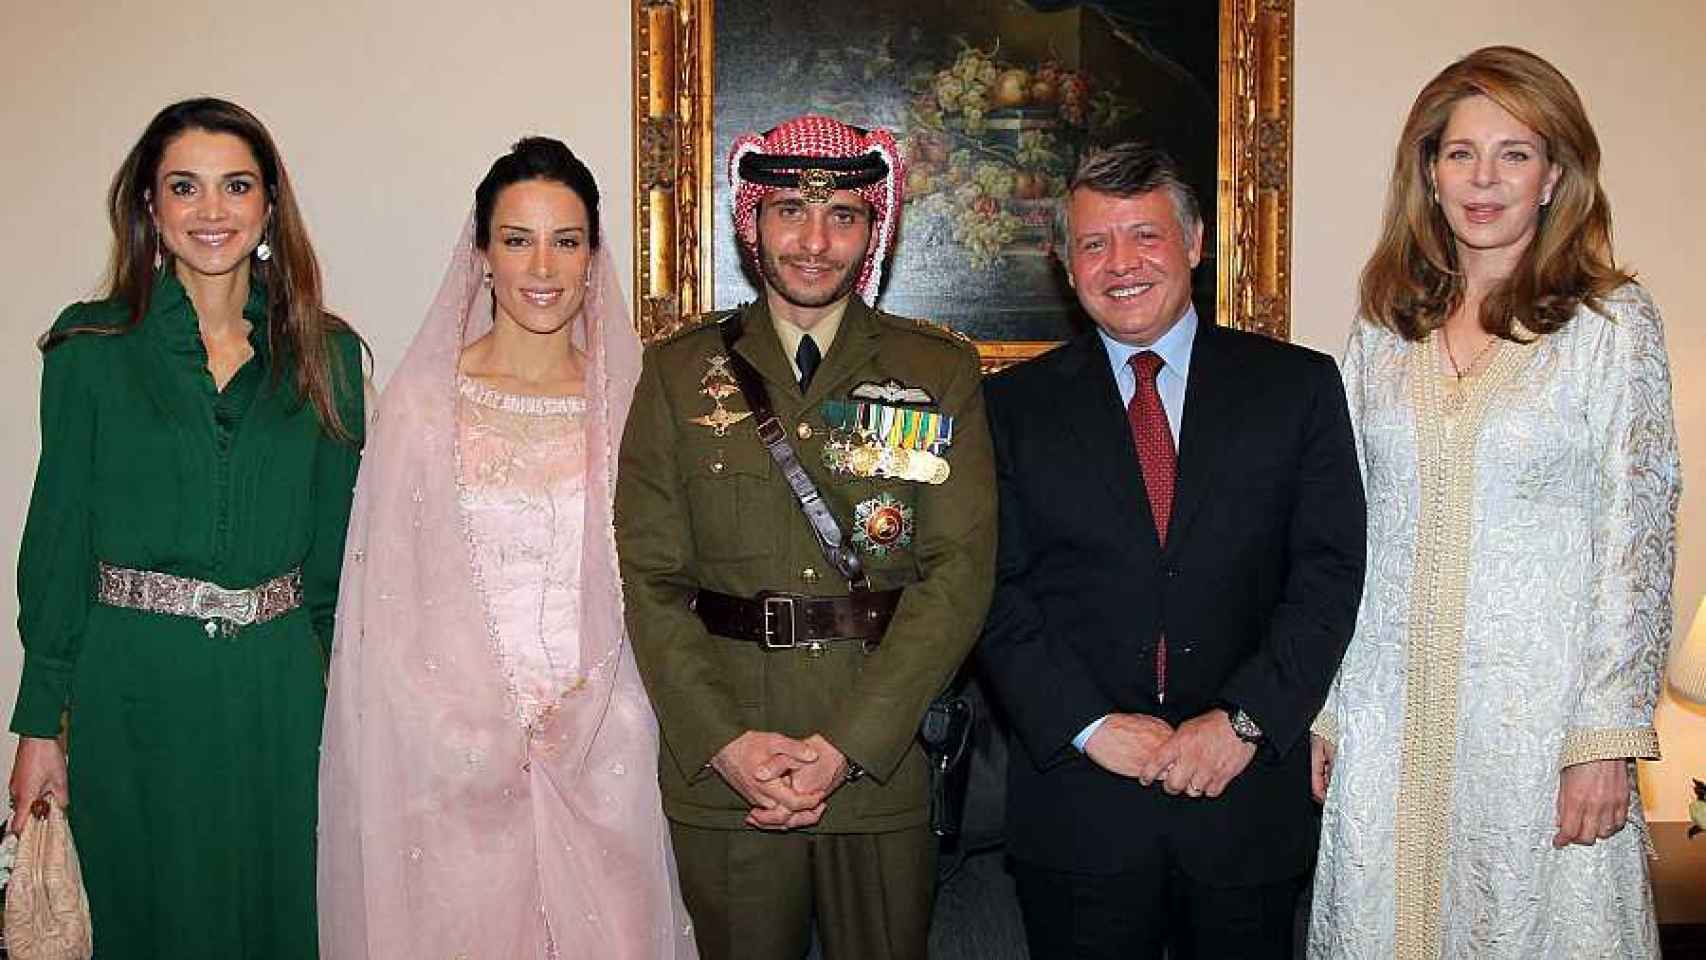 Imagen de 2012 en la boda de Hamzah bin Hussein y la princesa Basma Otoum, ambos en el centro. A su derecha, la reina Rania; y a su izquierda, Abdalá II y la reina Noor, viuda de Hussein.